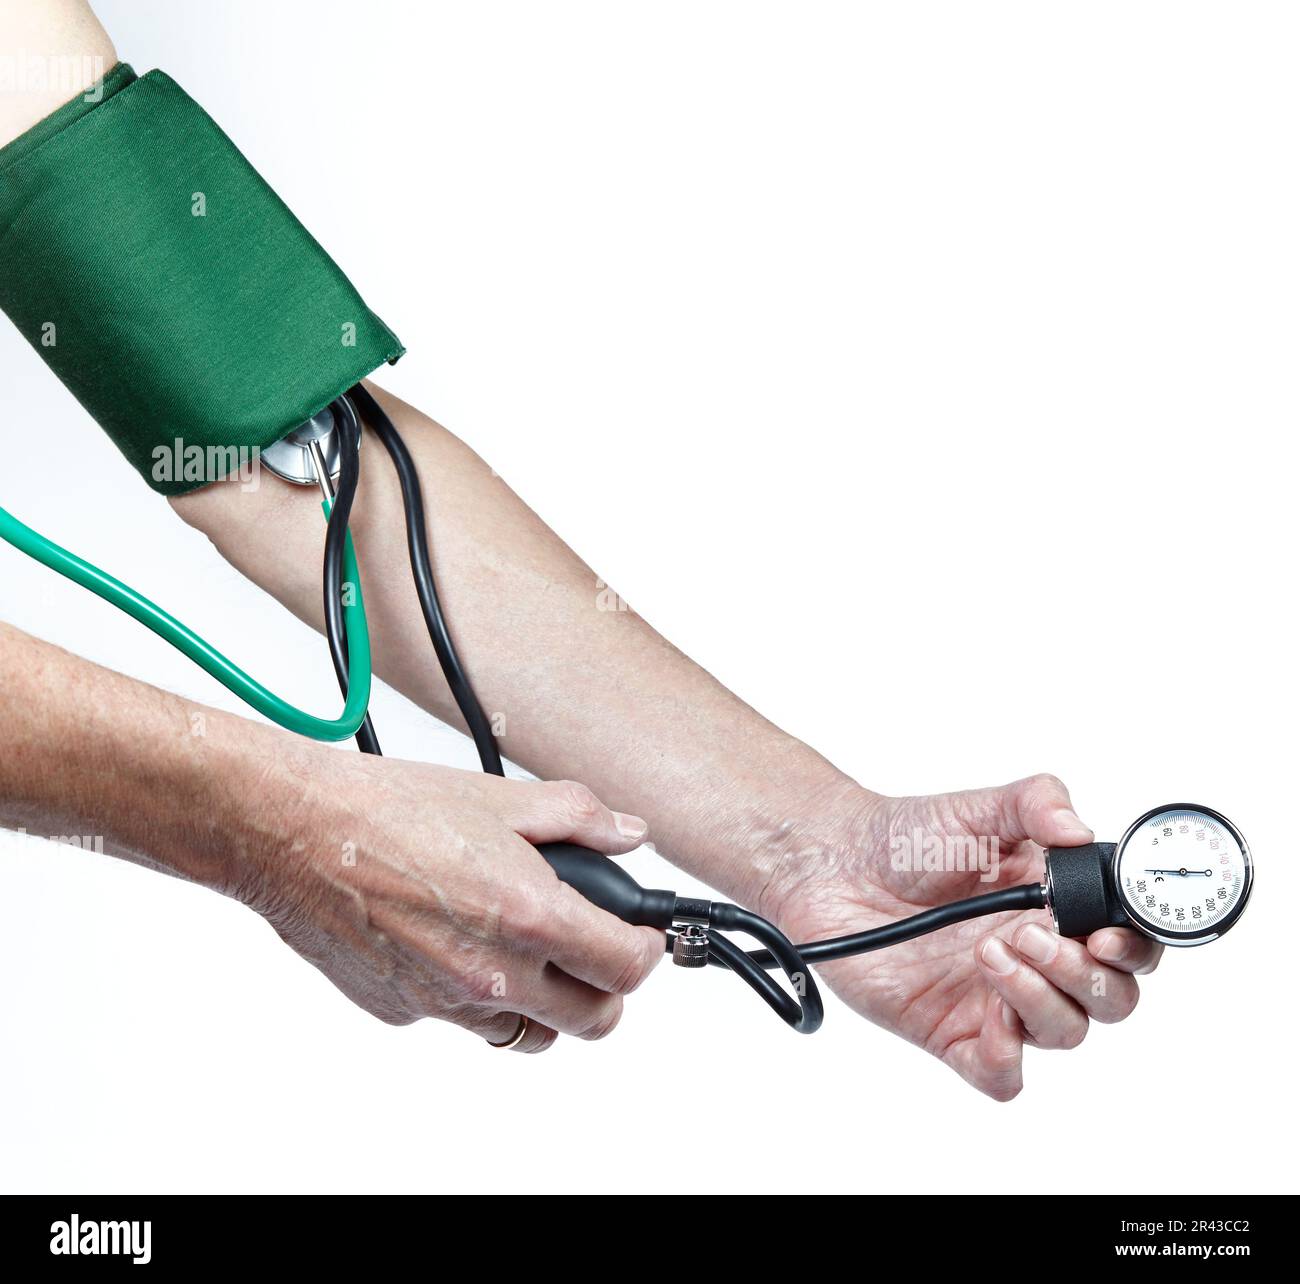 Homme mesurant la pression artérielle avec le tonomètre elle-même isolé fond blanc. Appareil médical de mesure mécanique de la pression sanguine Banque D'Images